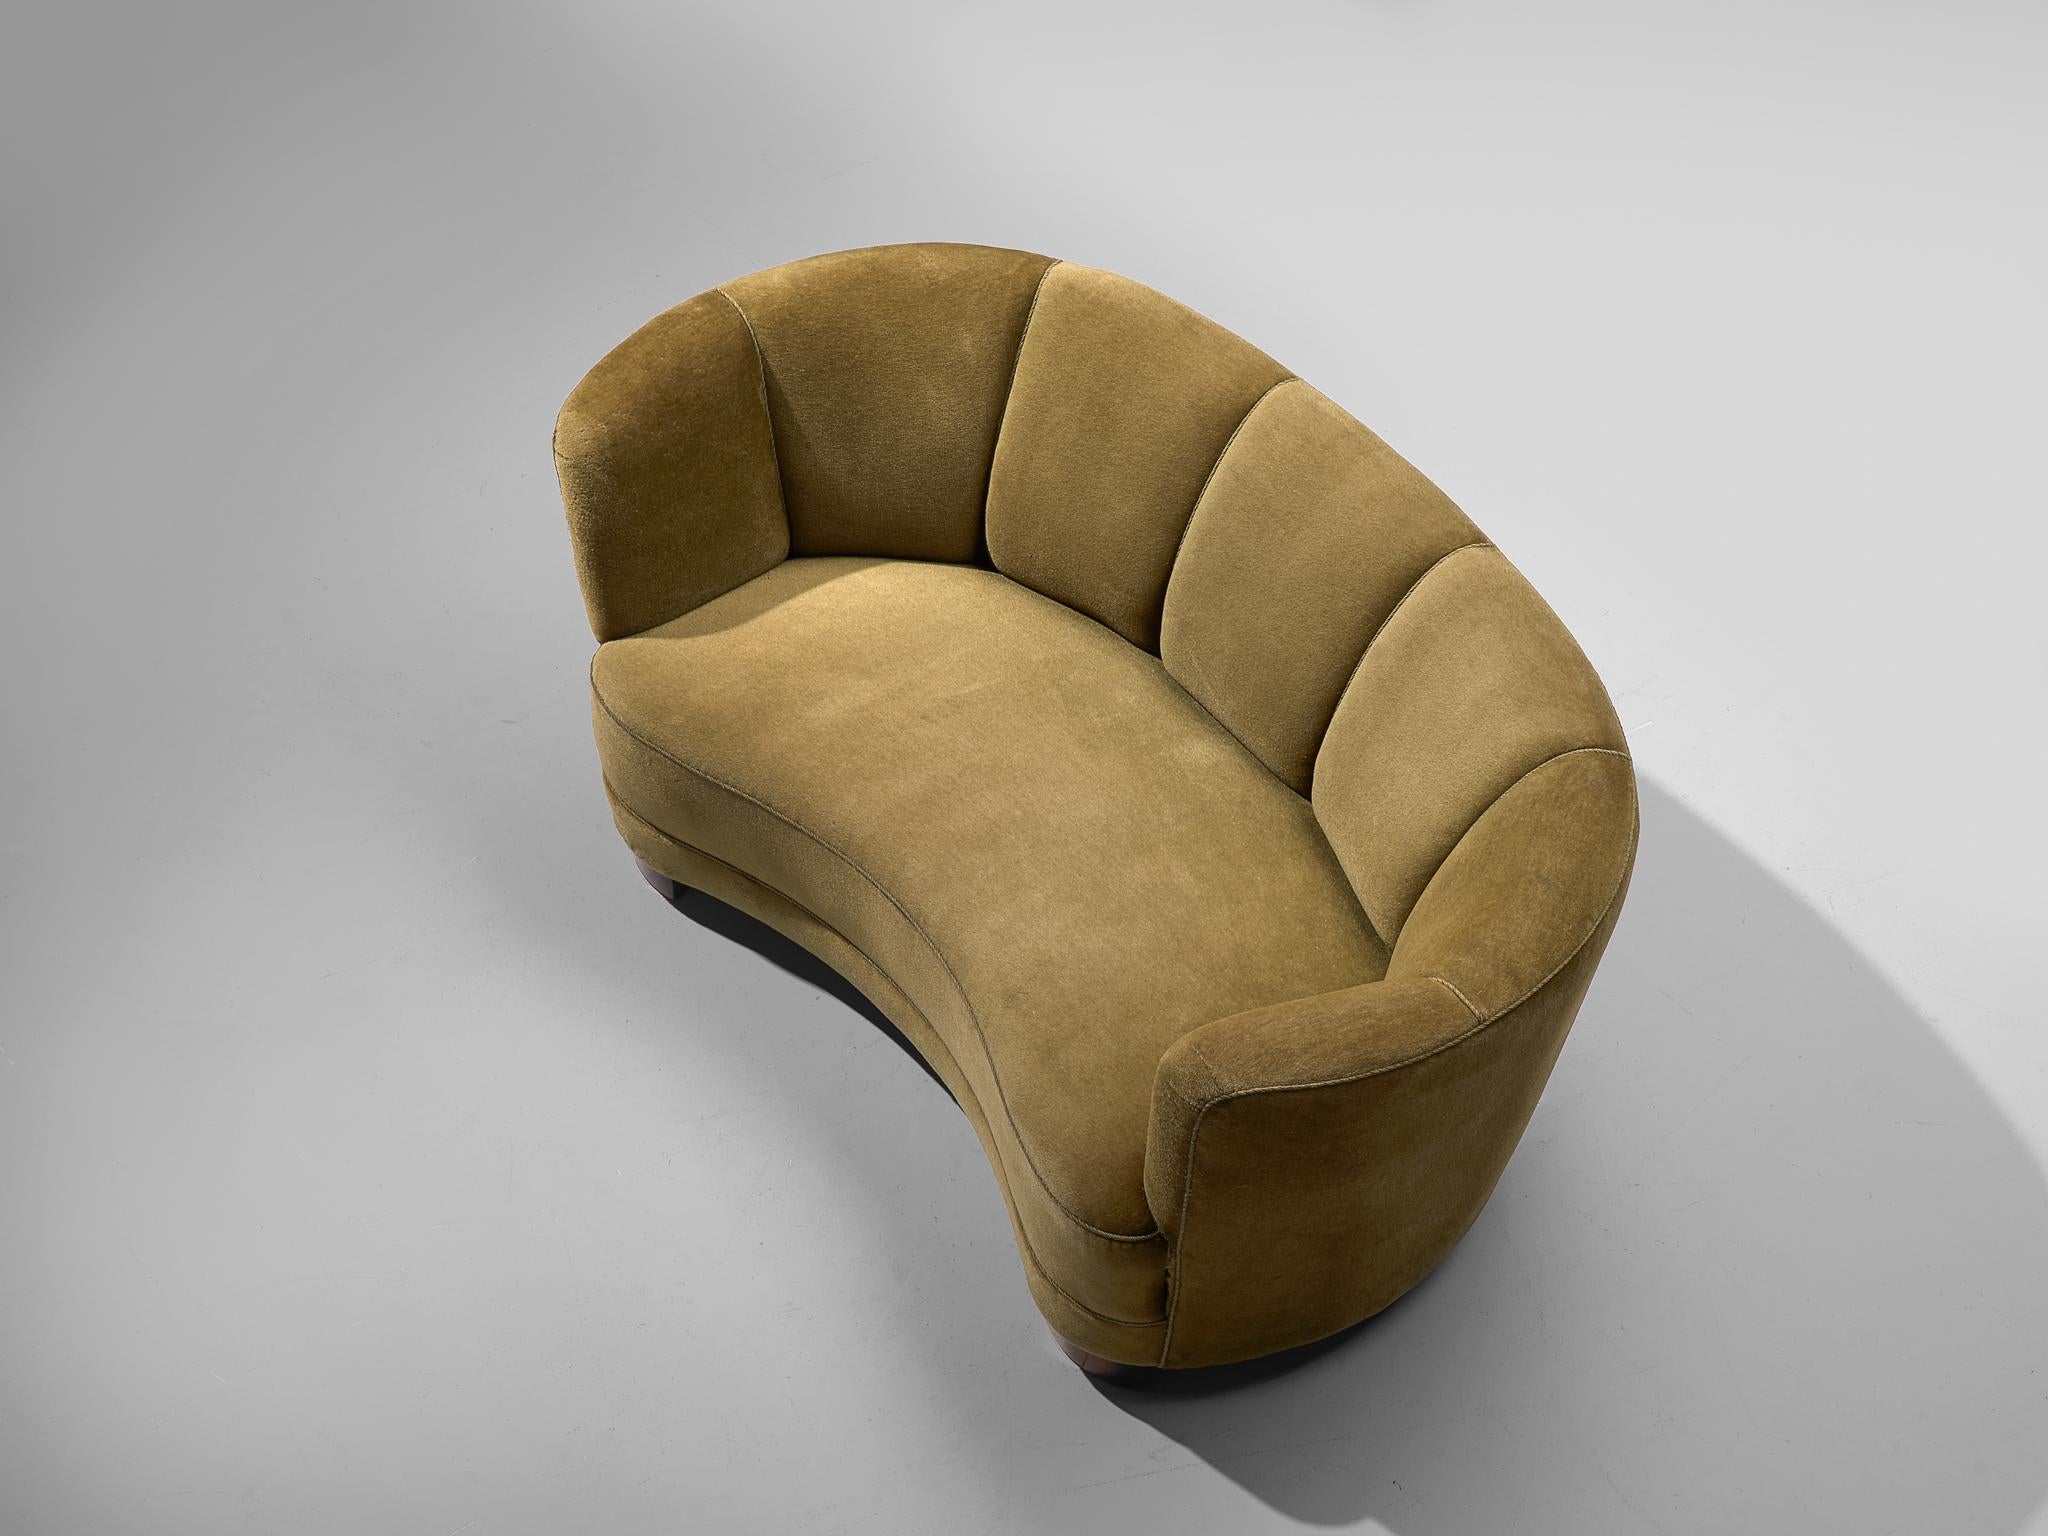 Geschwungene Couch, grüner Stoff, Eiche, Dänemark, 1940er Jahre

Dieses üppige Sofa ist mit Holzbeinen und einem weichen grünen Stoff ausgestattet. Das Sofa hat einen geschwungenen Rücken, während die Rückenlehne horizontal gerade ist und in die